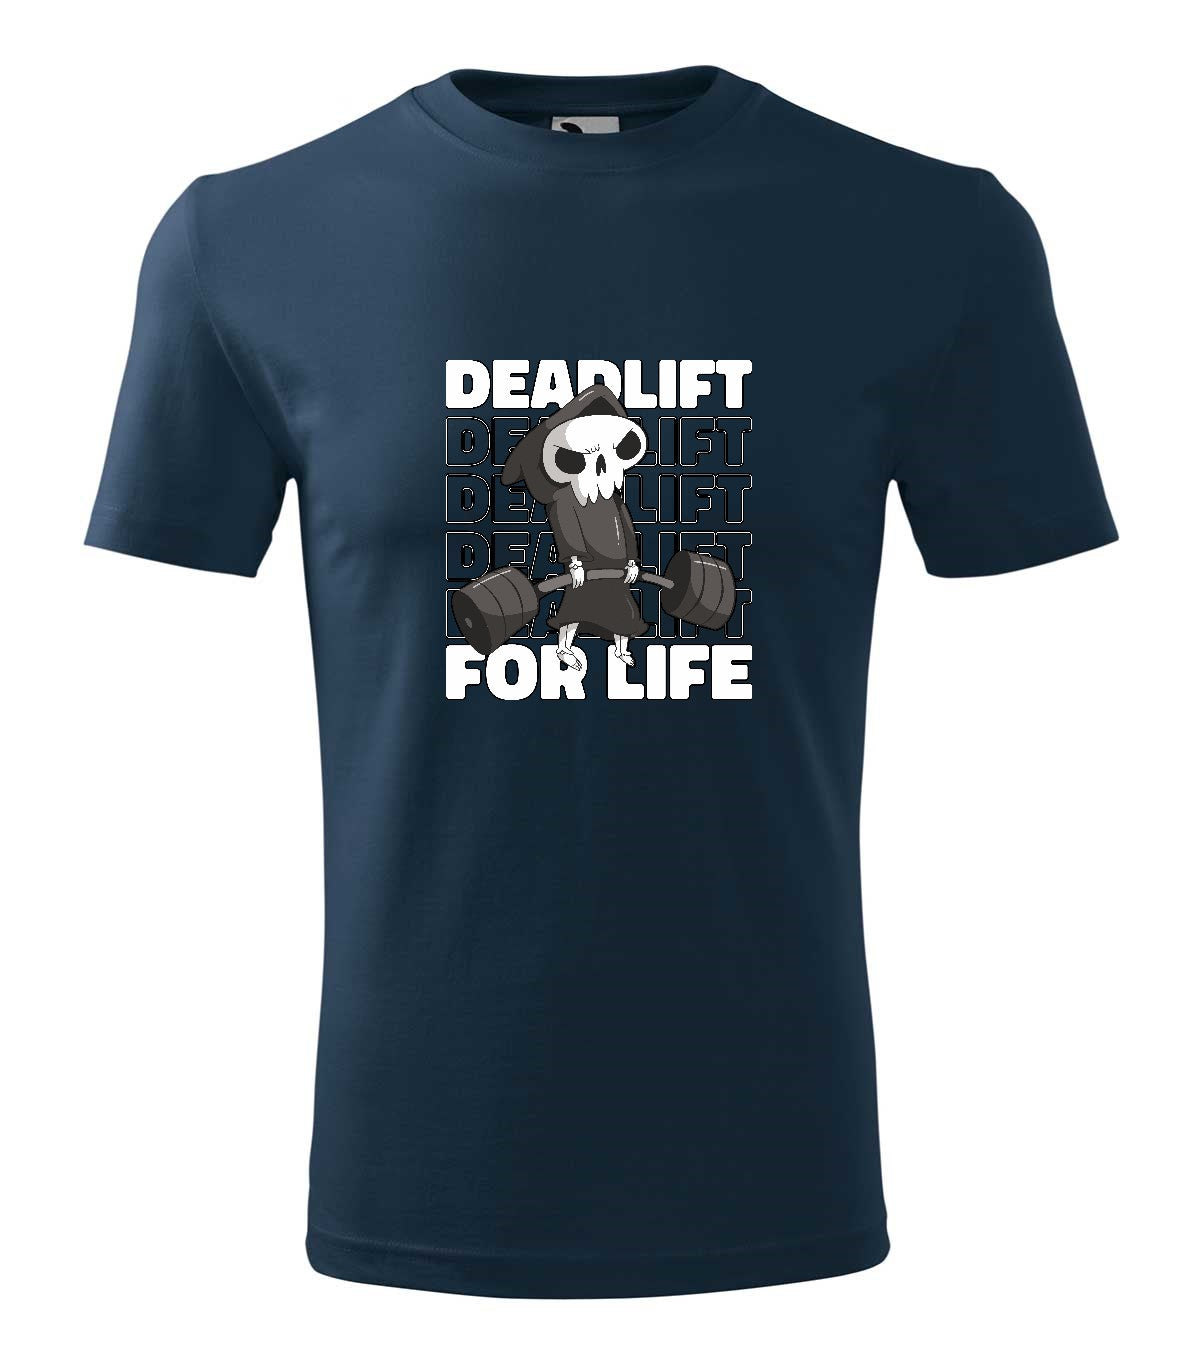 Deadlift férfi technikai póló